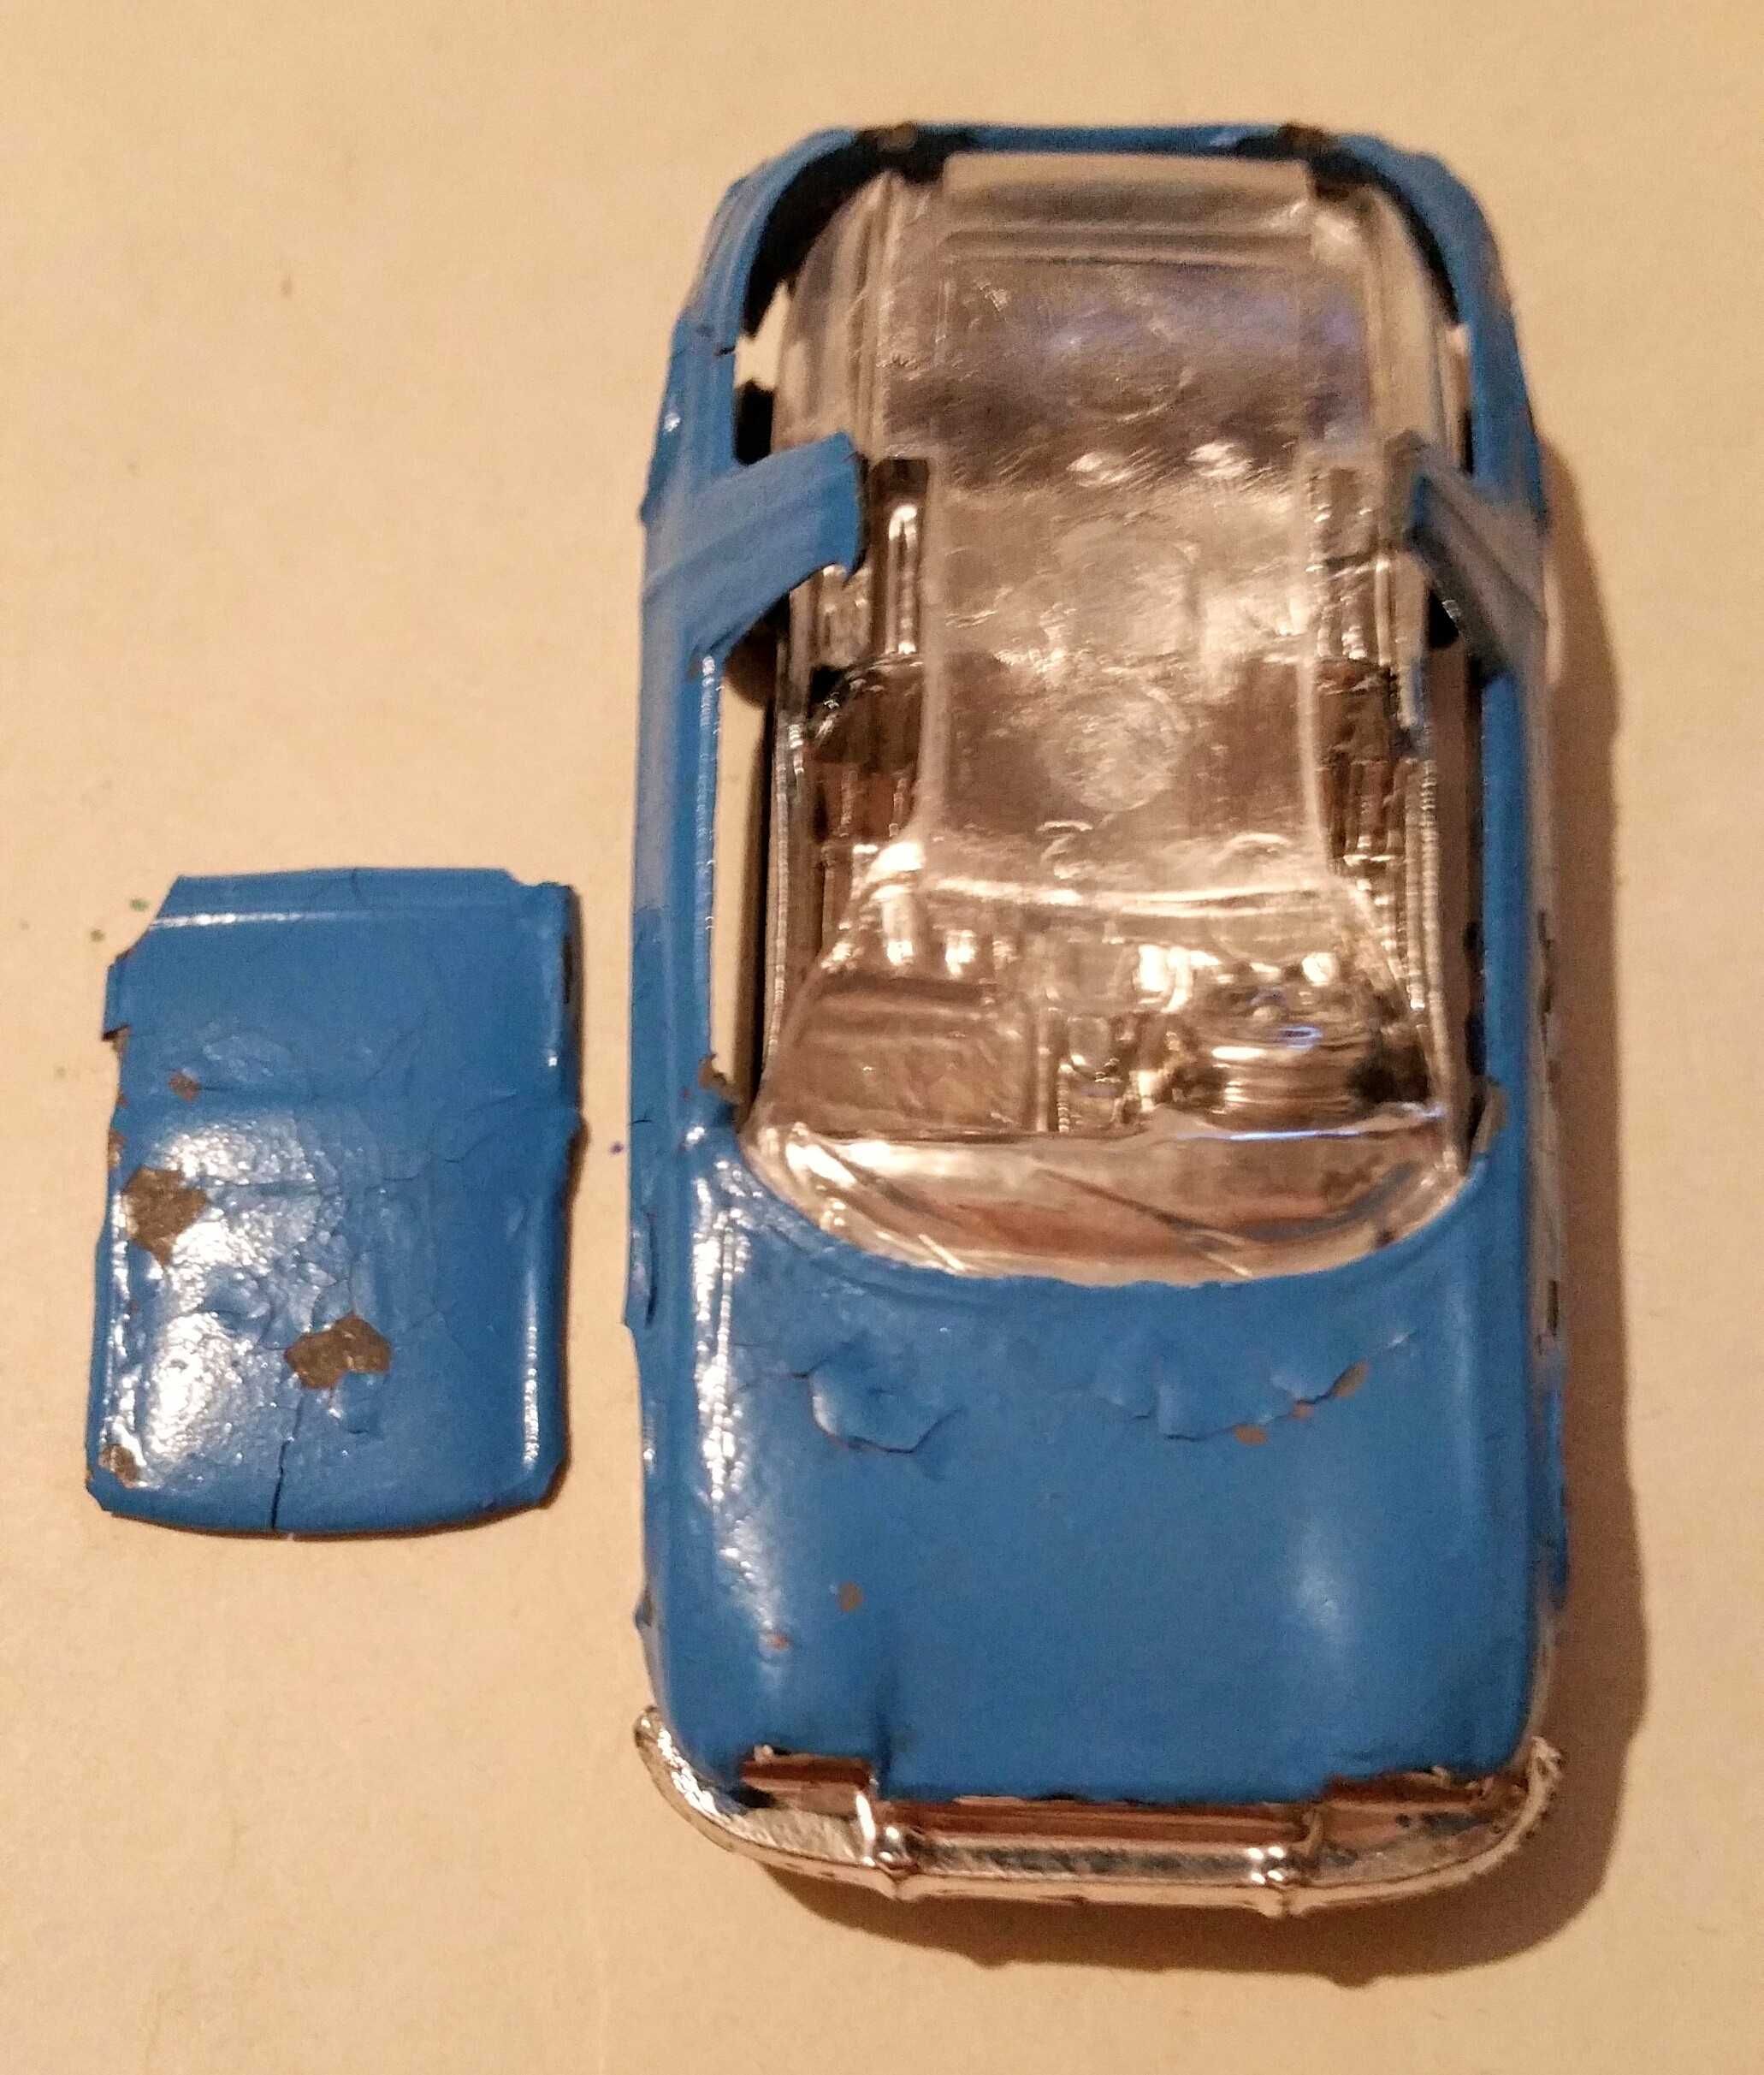 Редкий автомобиль модель Малютка игрушка завод Прогресс